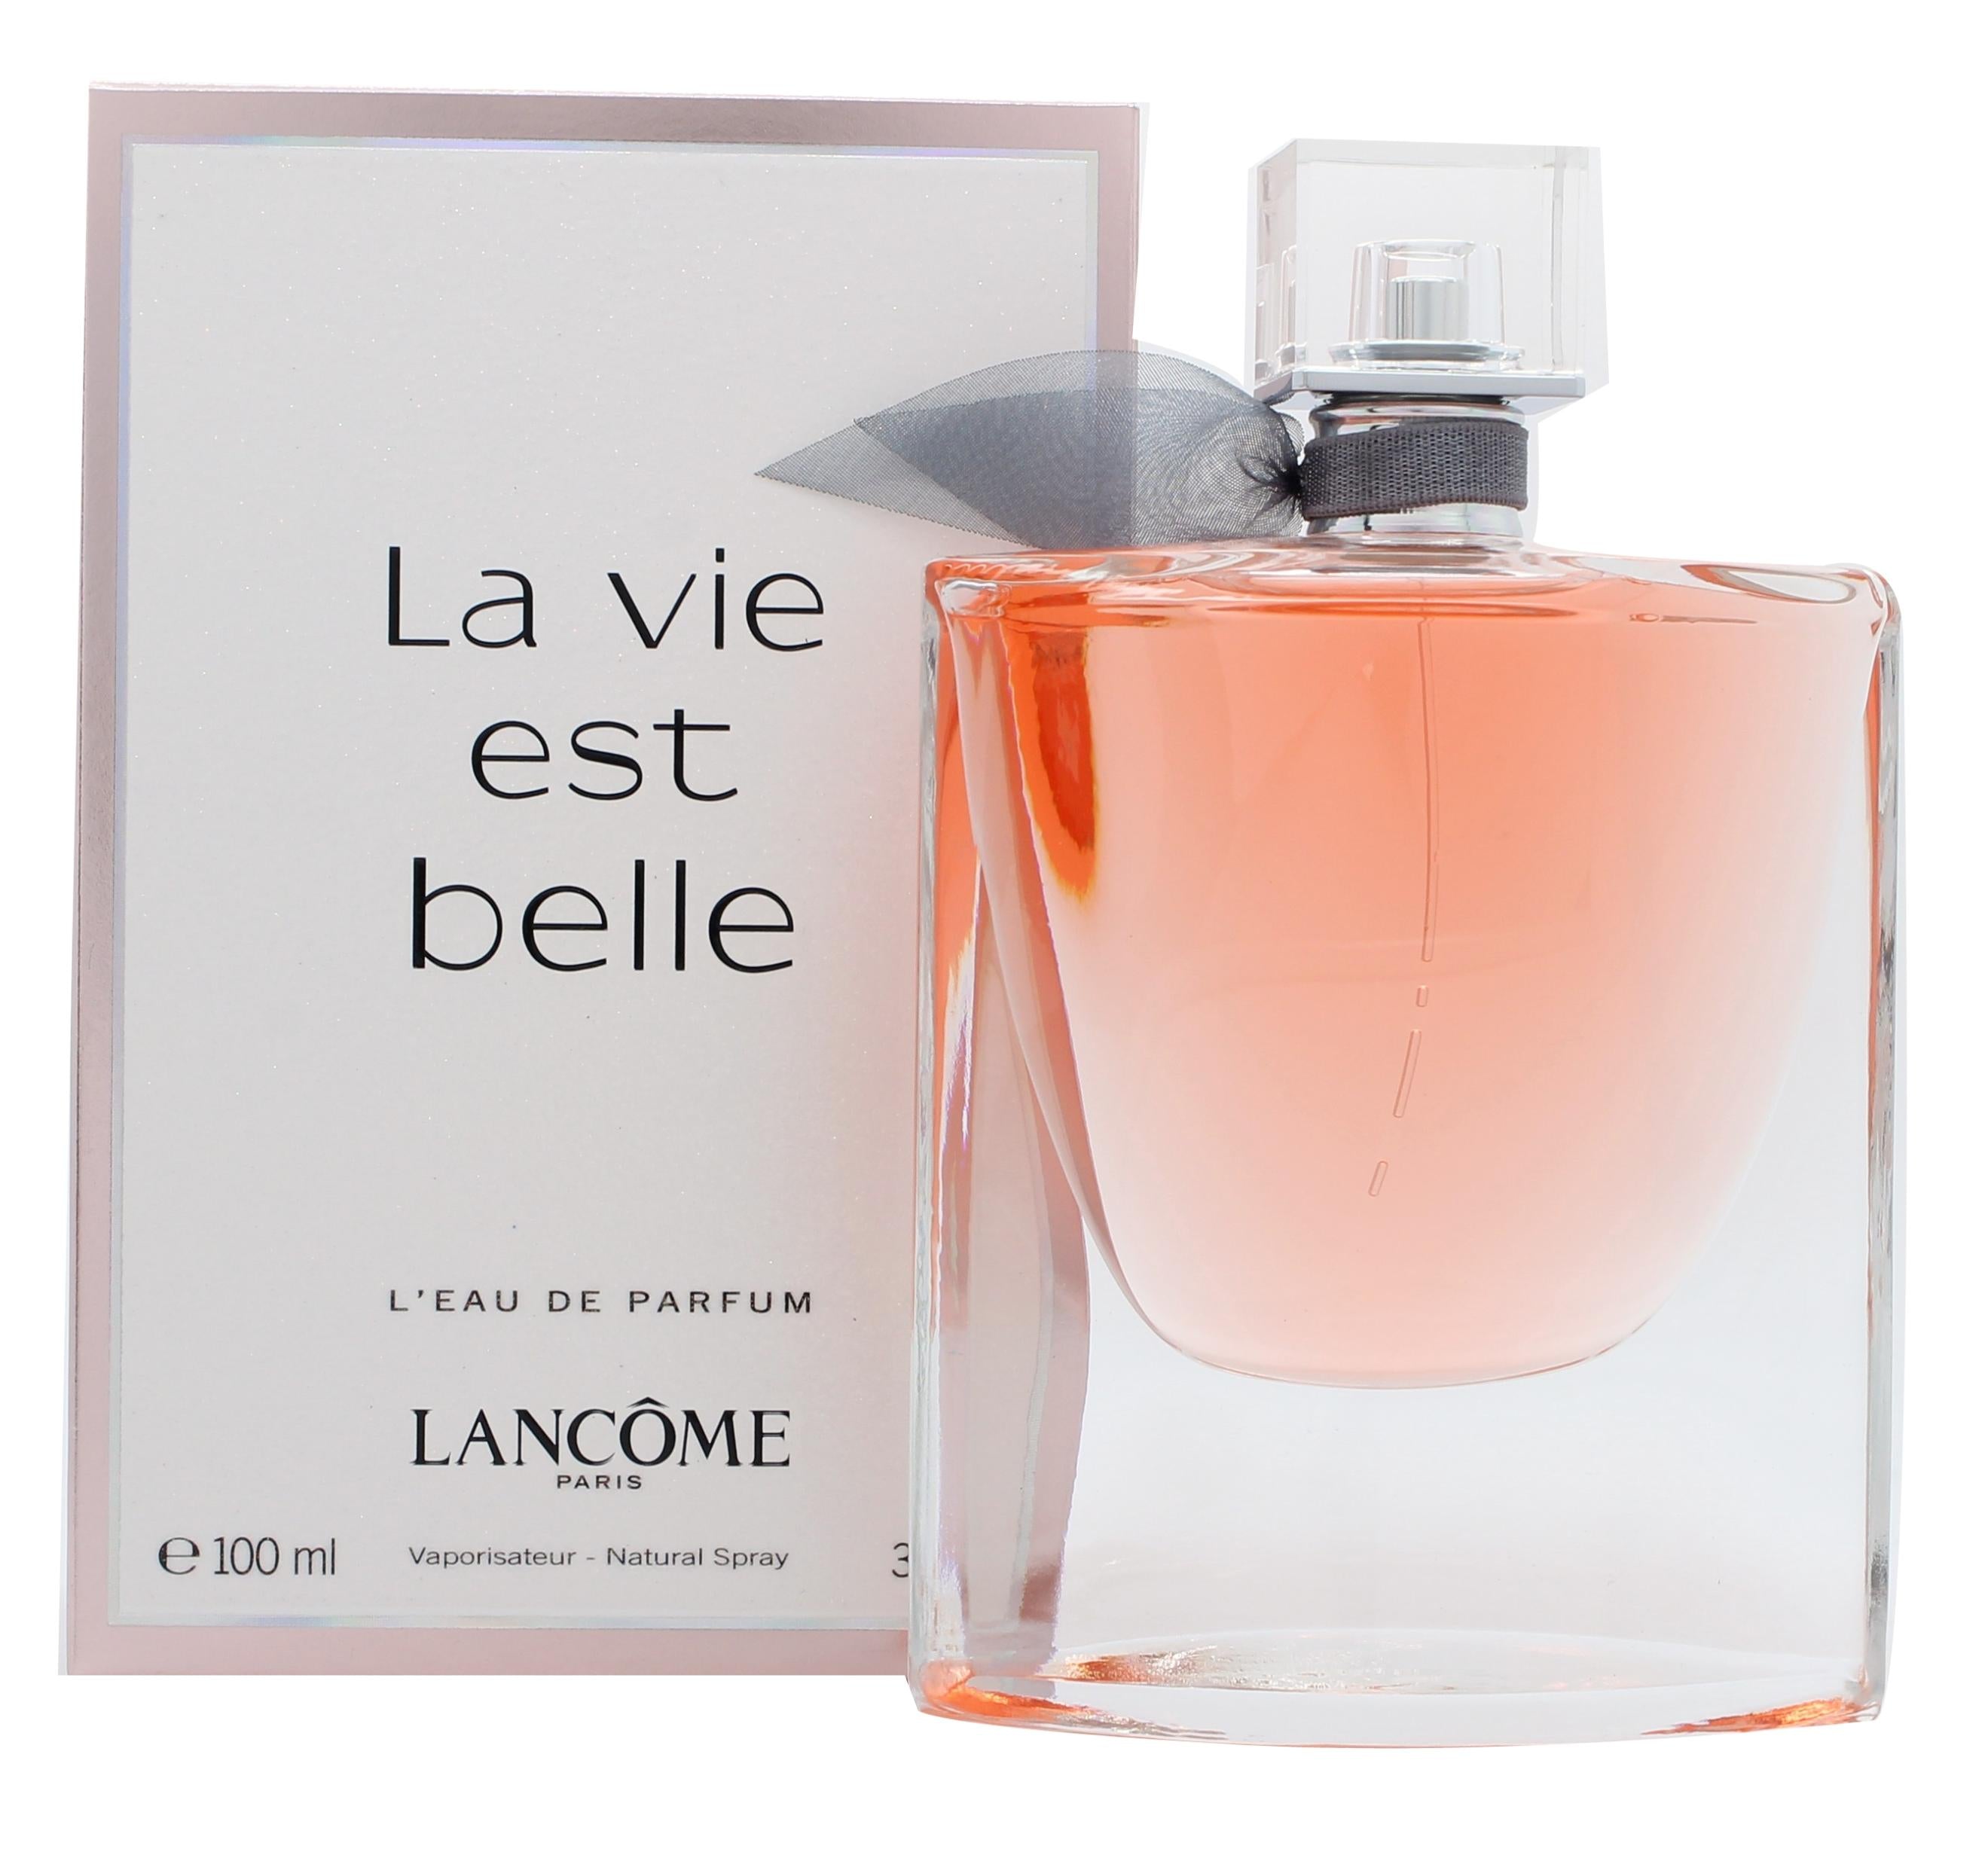 View Lancome La Vie Est Belle Eau de Parfum 100ml Spray information